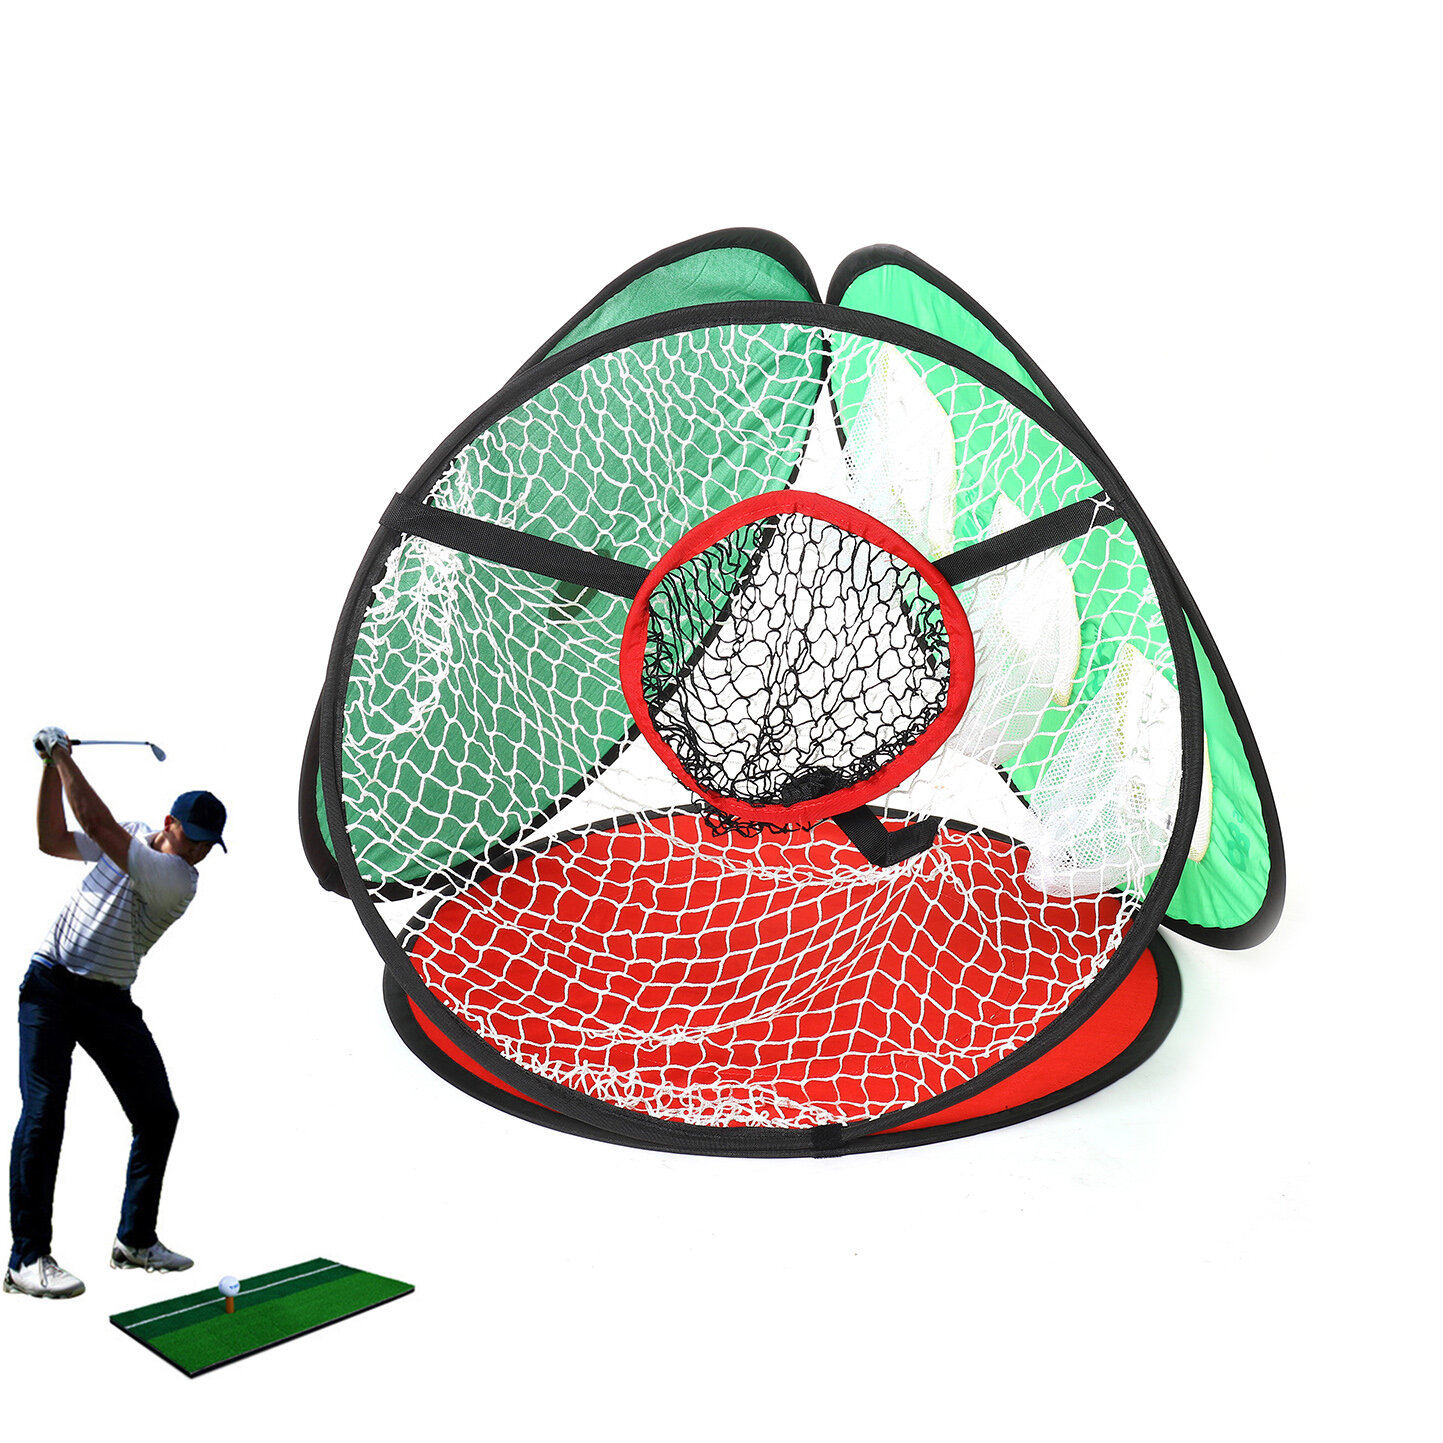 Golf-Chipping-Netz 3-in-1 für Training, Indoor- und Outdoor-Trainingsmatte, tragbarer Ballrückholer, Golf-Trainingshilfe